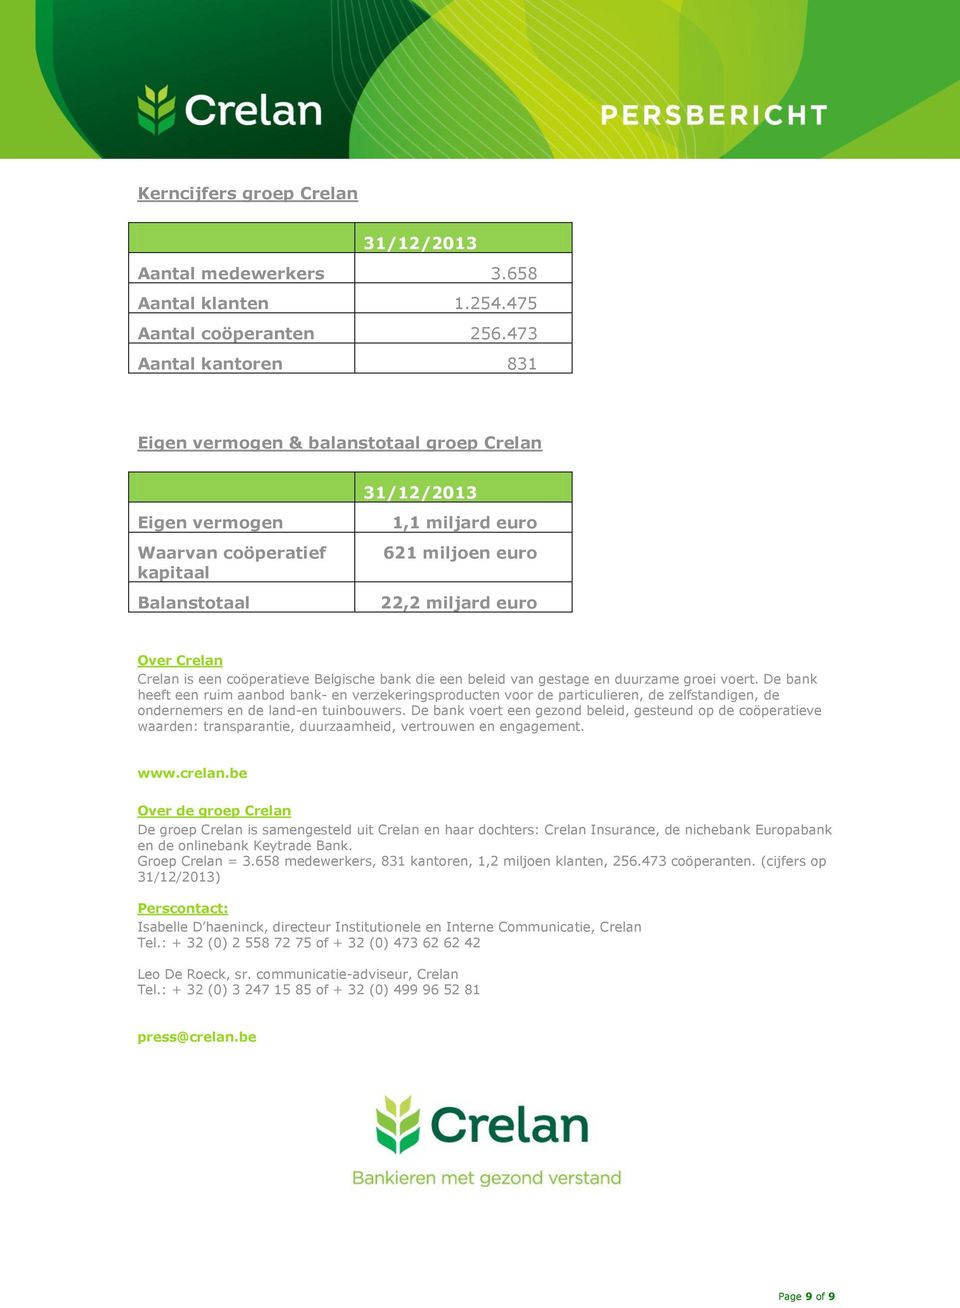 Crelan is een coöperatieve Belgische bank die een beleid van gestage en duurzame groei voert.